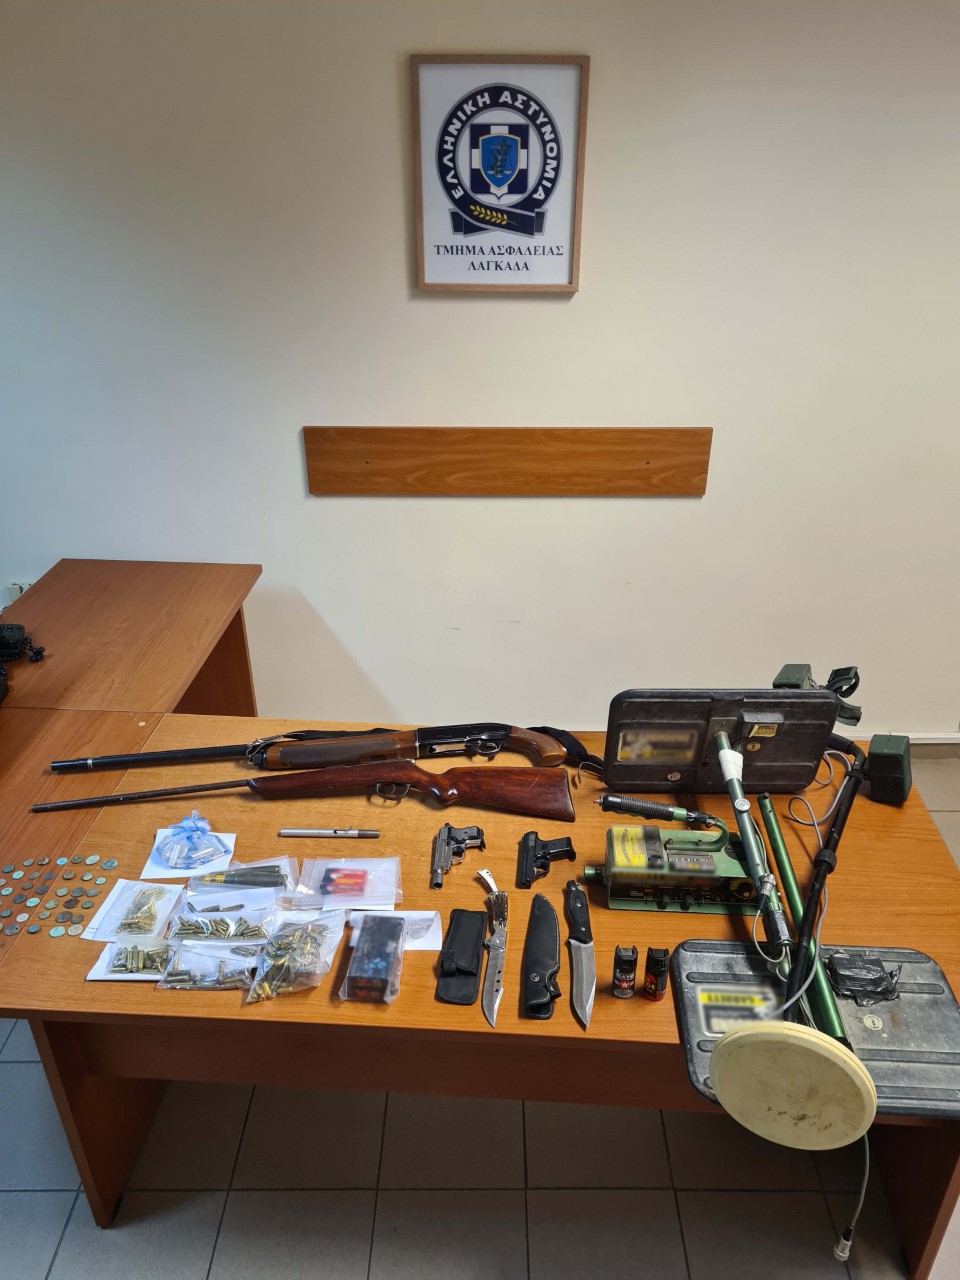 Θεσσαλονίκη: 58χρονος έκρυβε στο σπίτι του αρχαία νομίσματα και όπλα